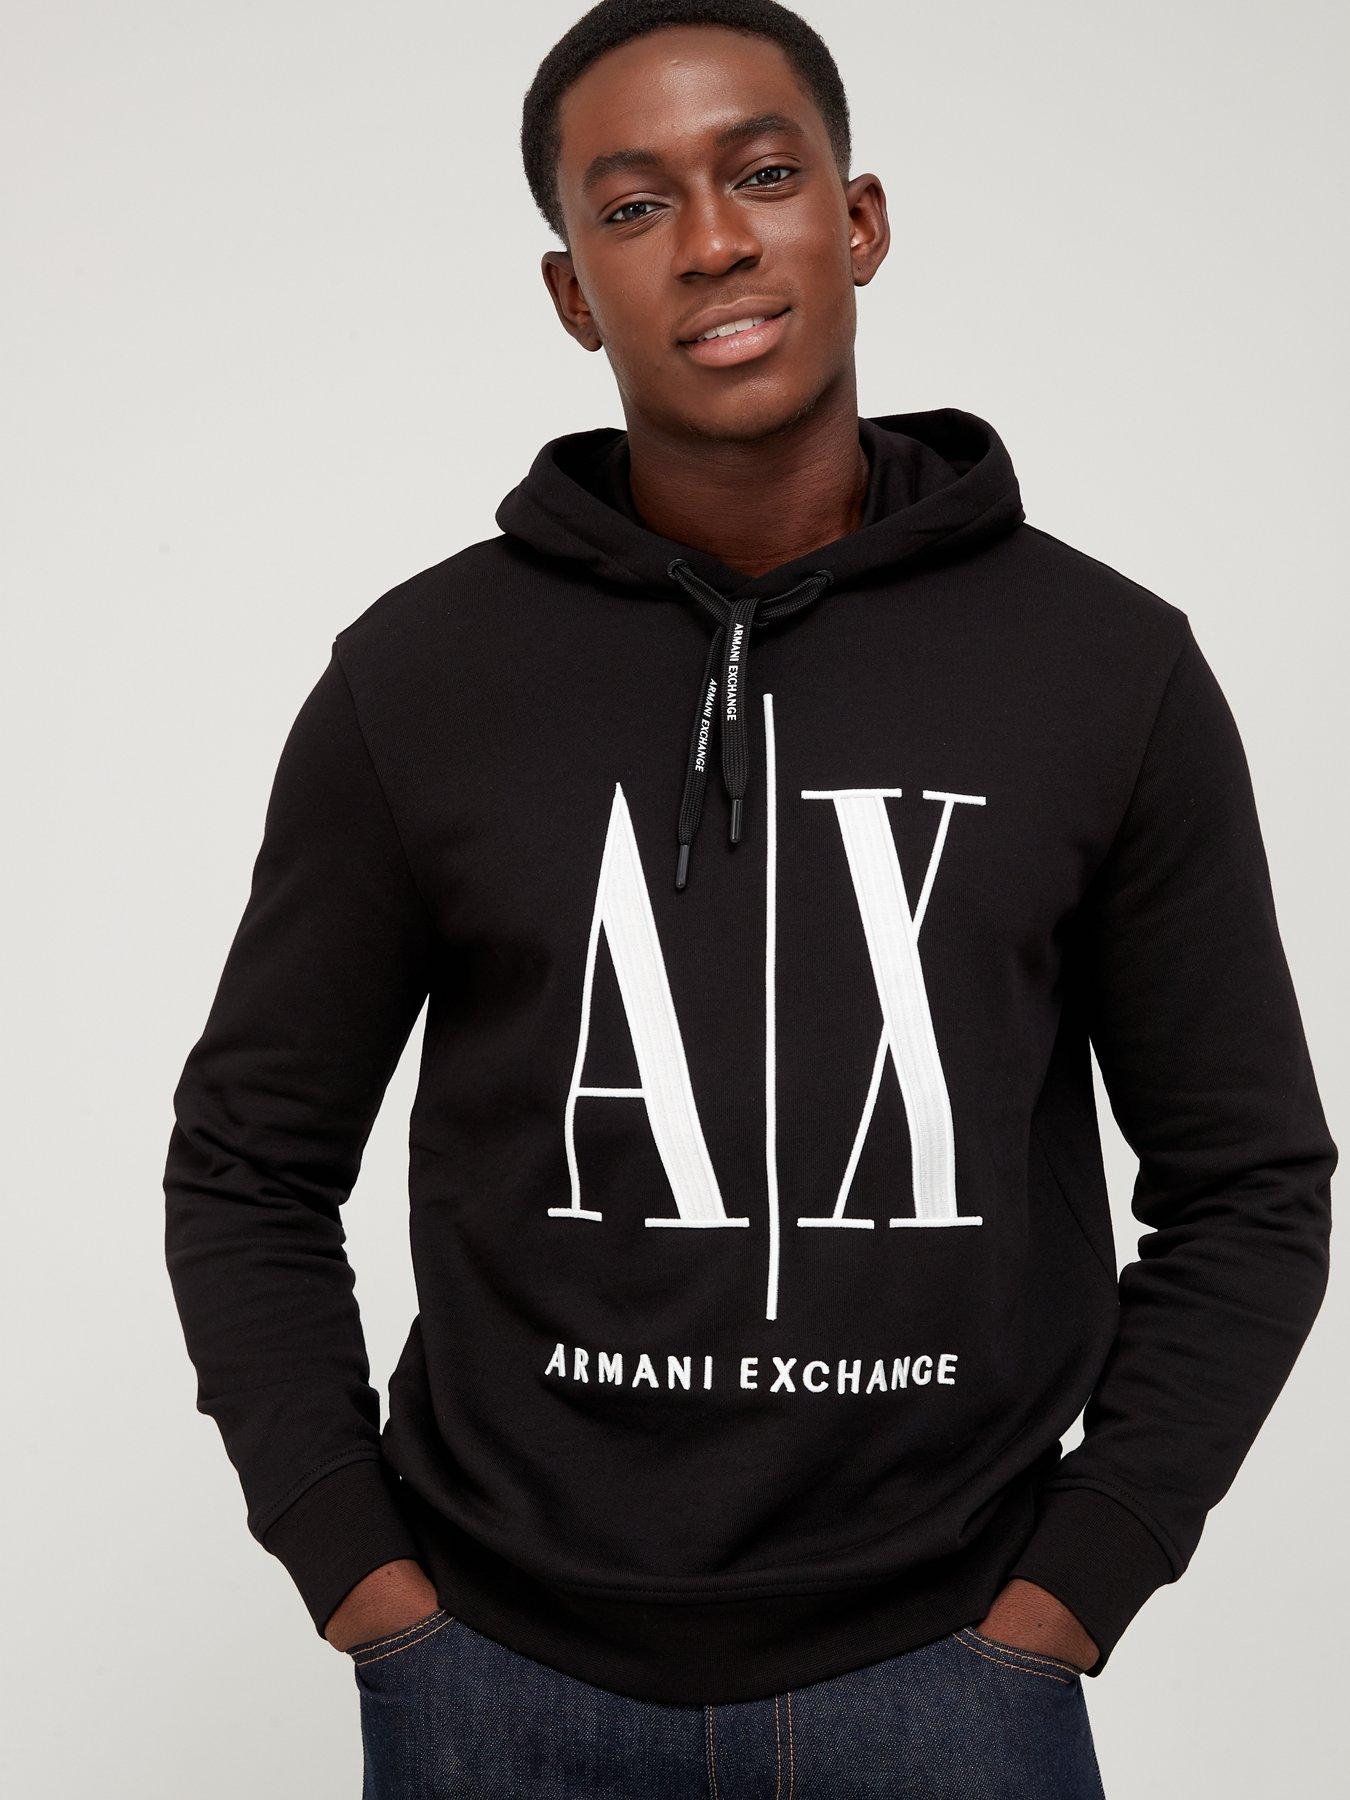 Armani exchange | Hoodies & sweatshirts | Men 